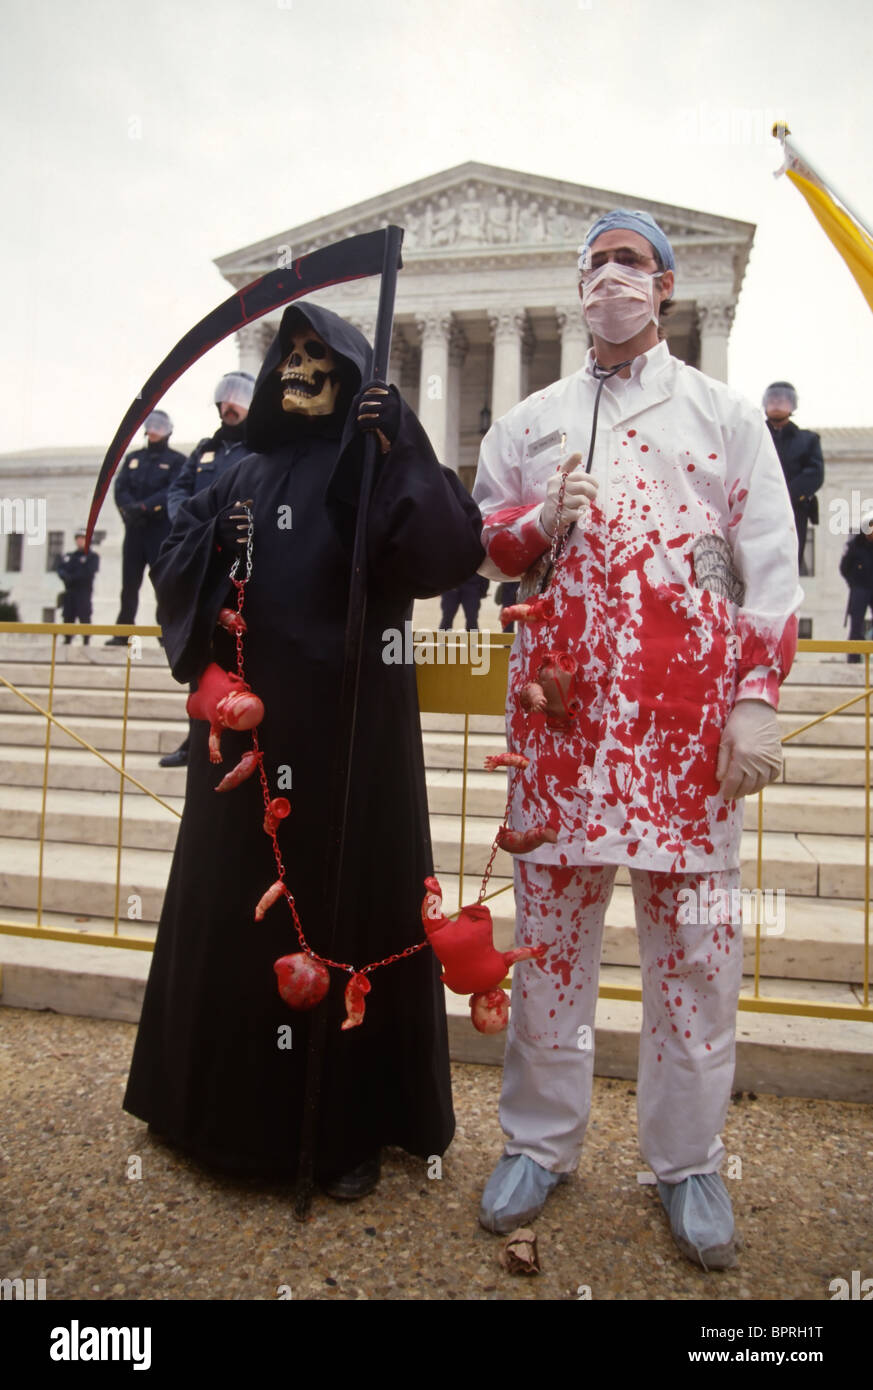 Des manifestants anti-avortement, habillé comme la mort en face de l'édifice de la Cour suprême américaine Banque D'Images